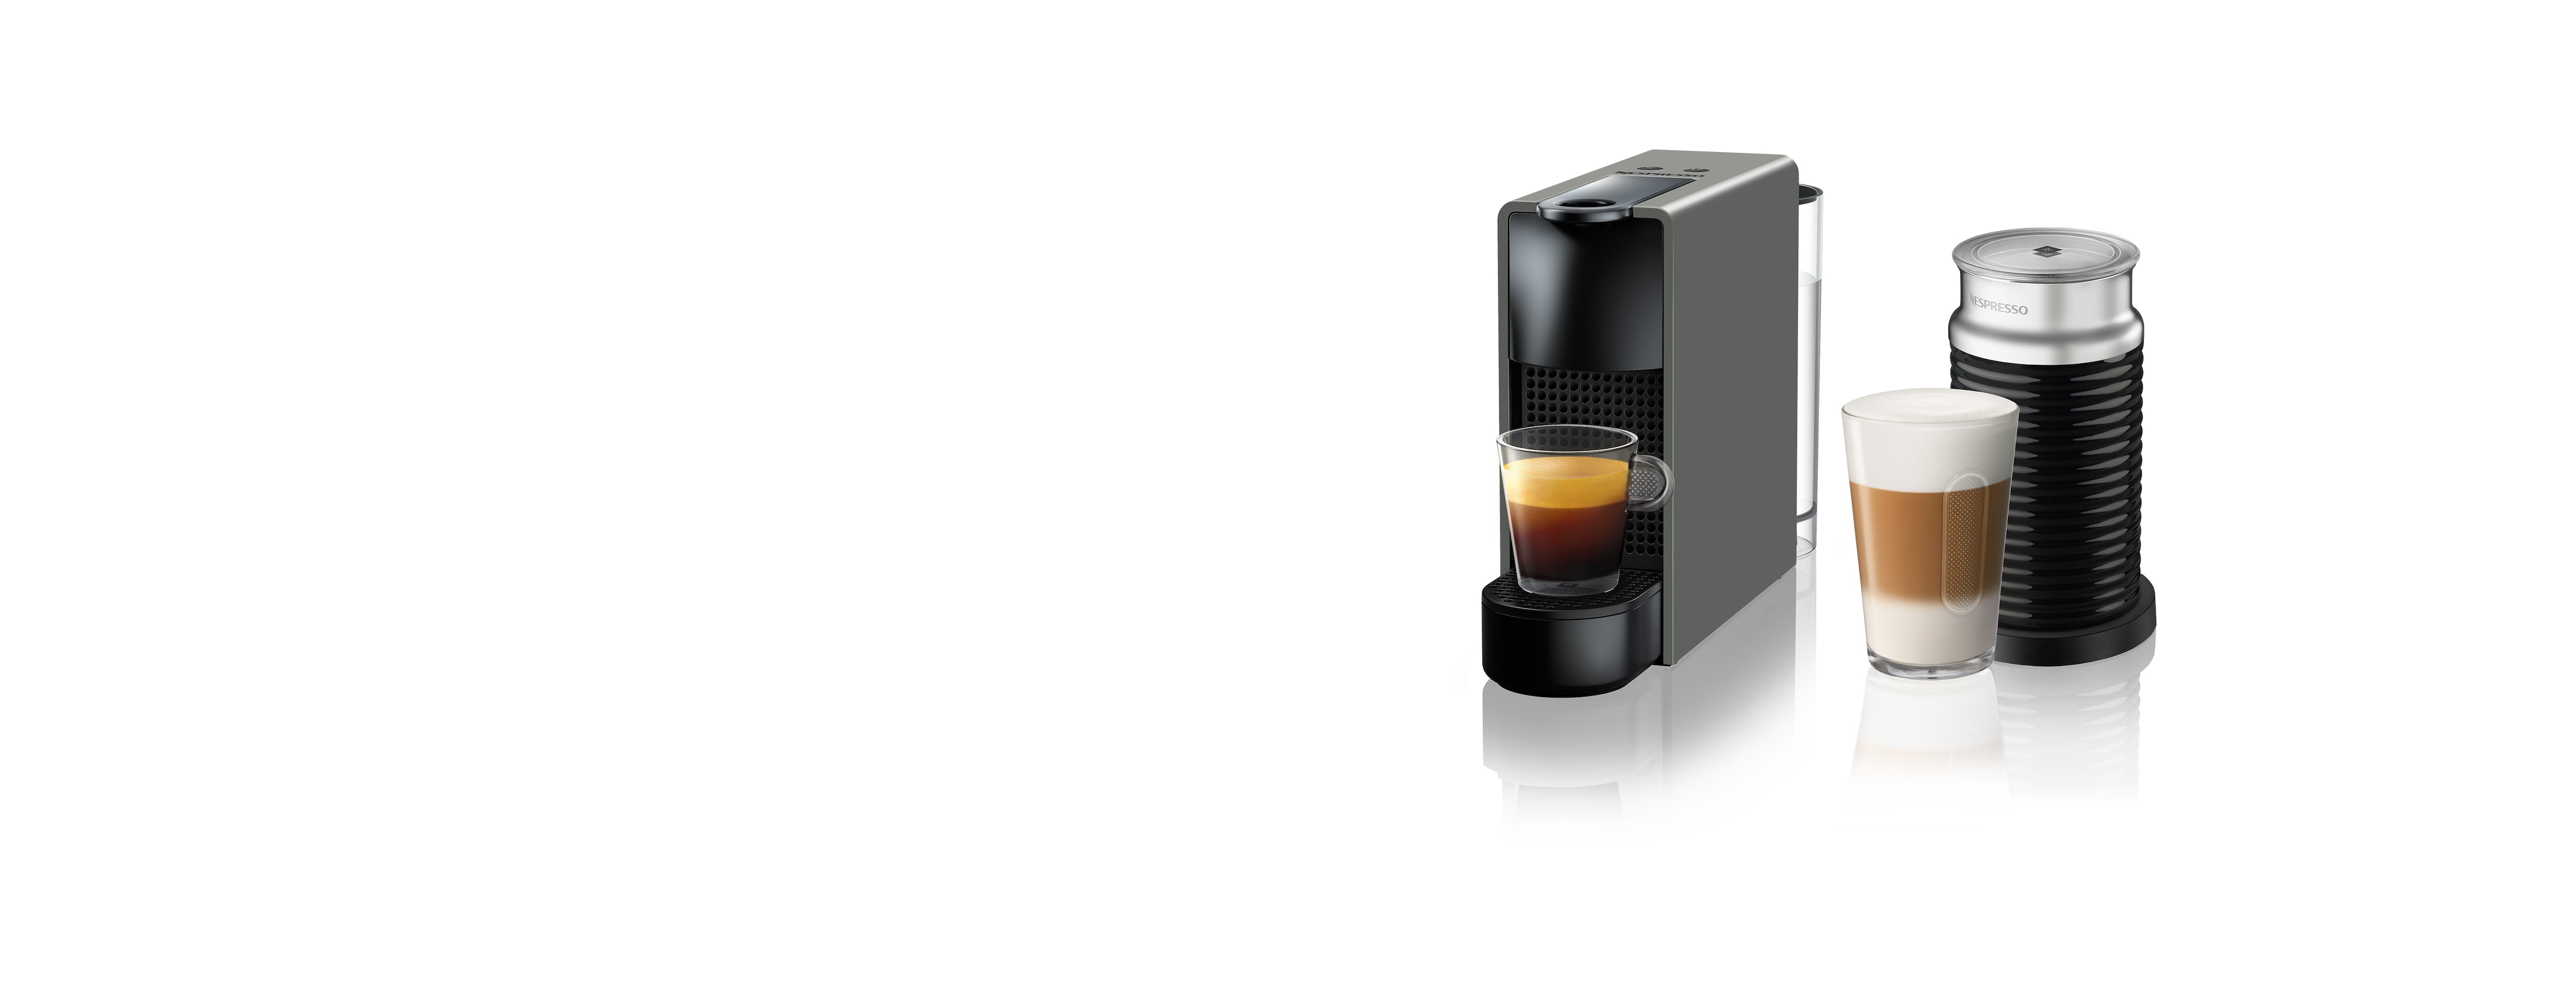 Nespresso Essenza Mini Espresso Machine with Aeroccino Milk Frother